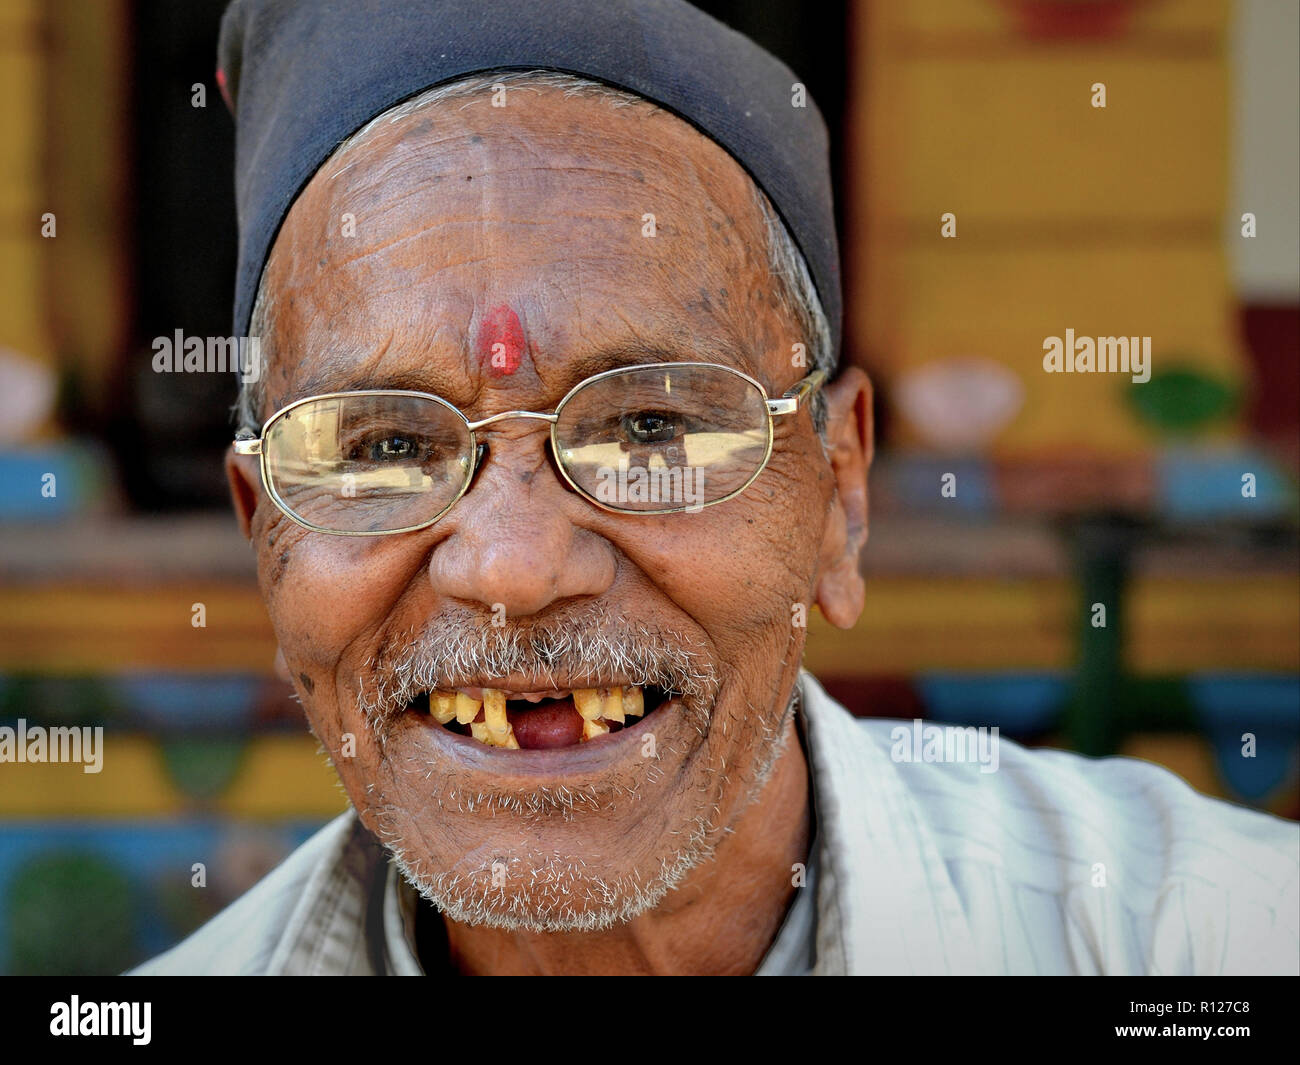 Souriant, ancien homme népalais Newari avec de très mauvaises dents. Banque D'Images